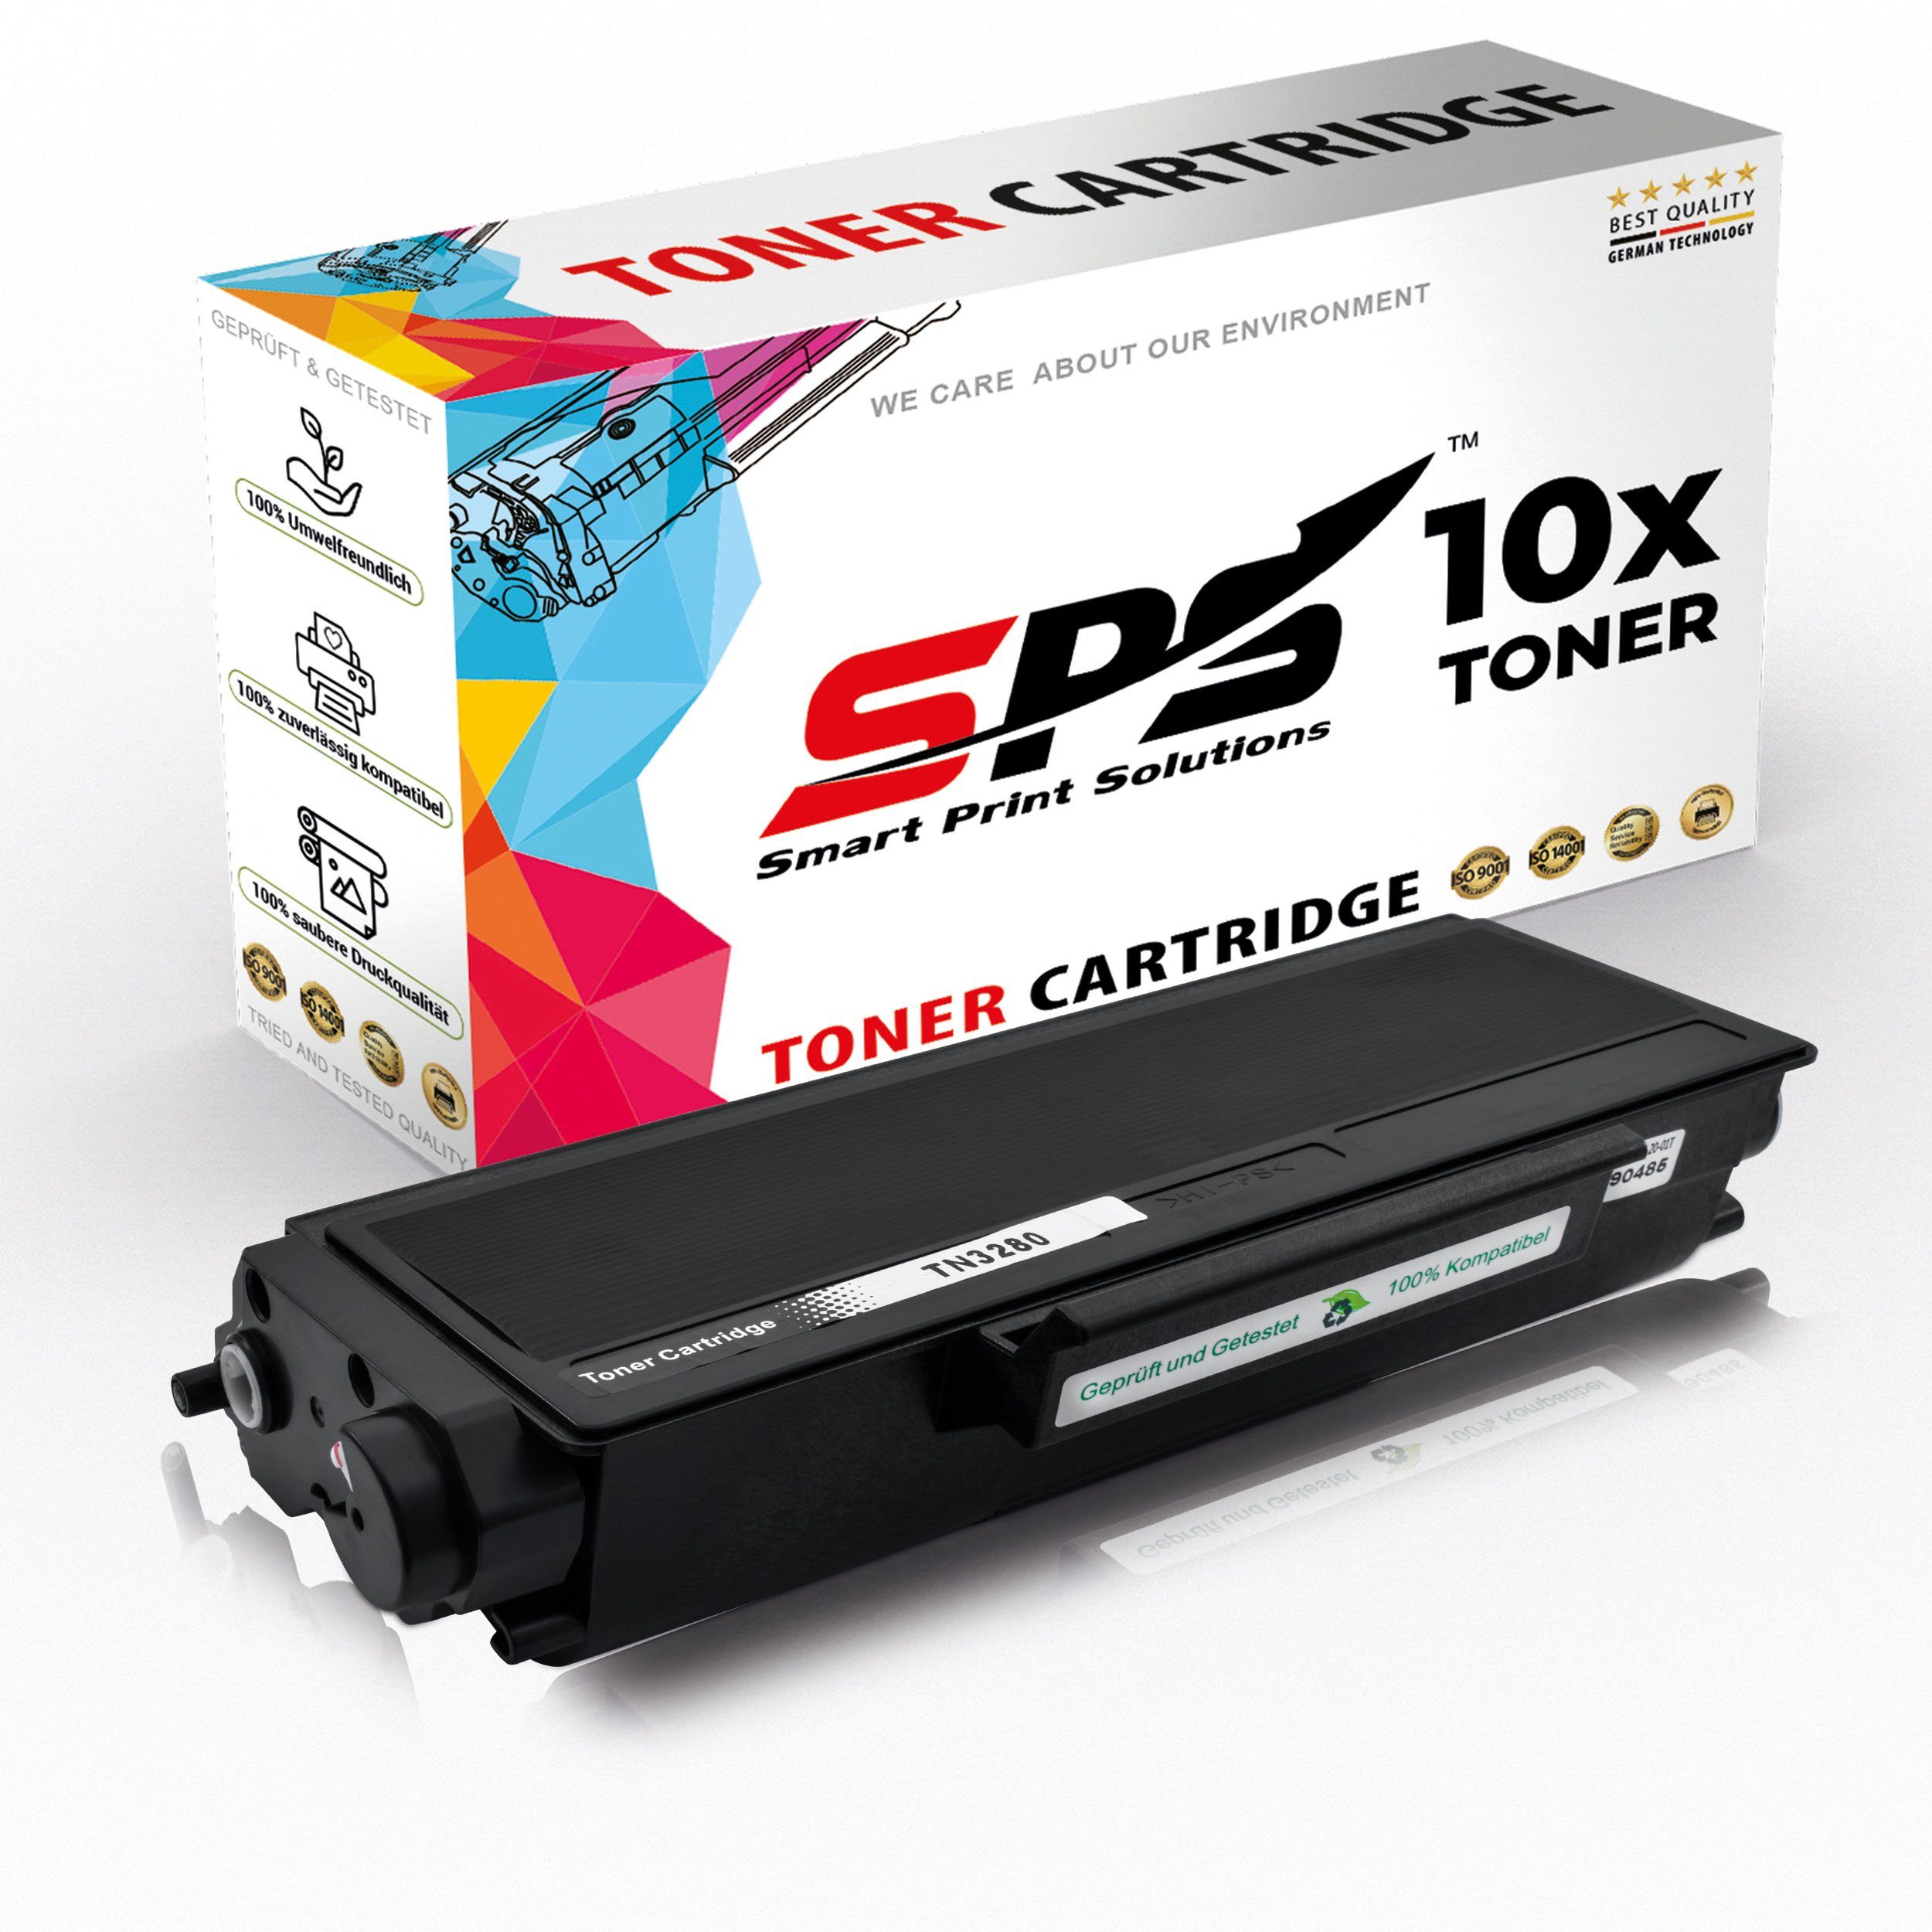 SPS Tonerkartusche Kompatibel für Brother DCP-8070 TN-3280, (10er Pack) | Tonerpatronen